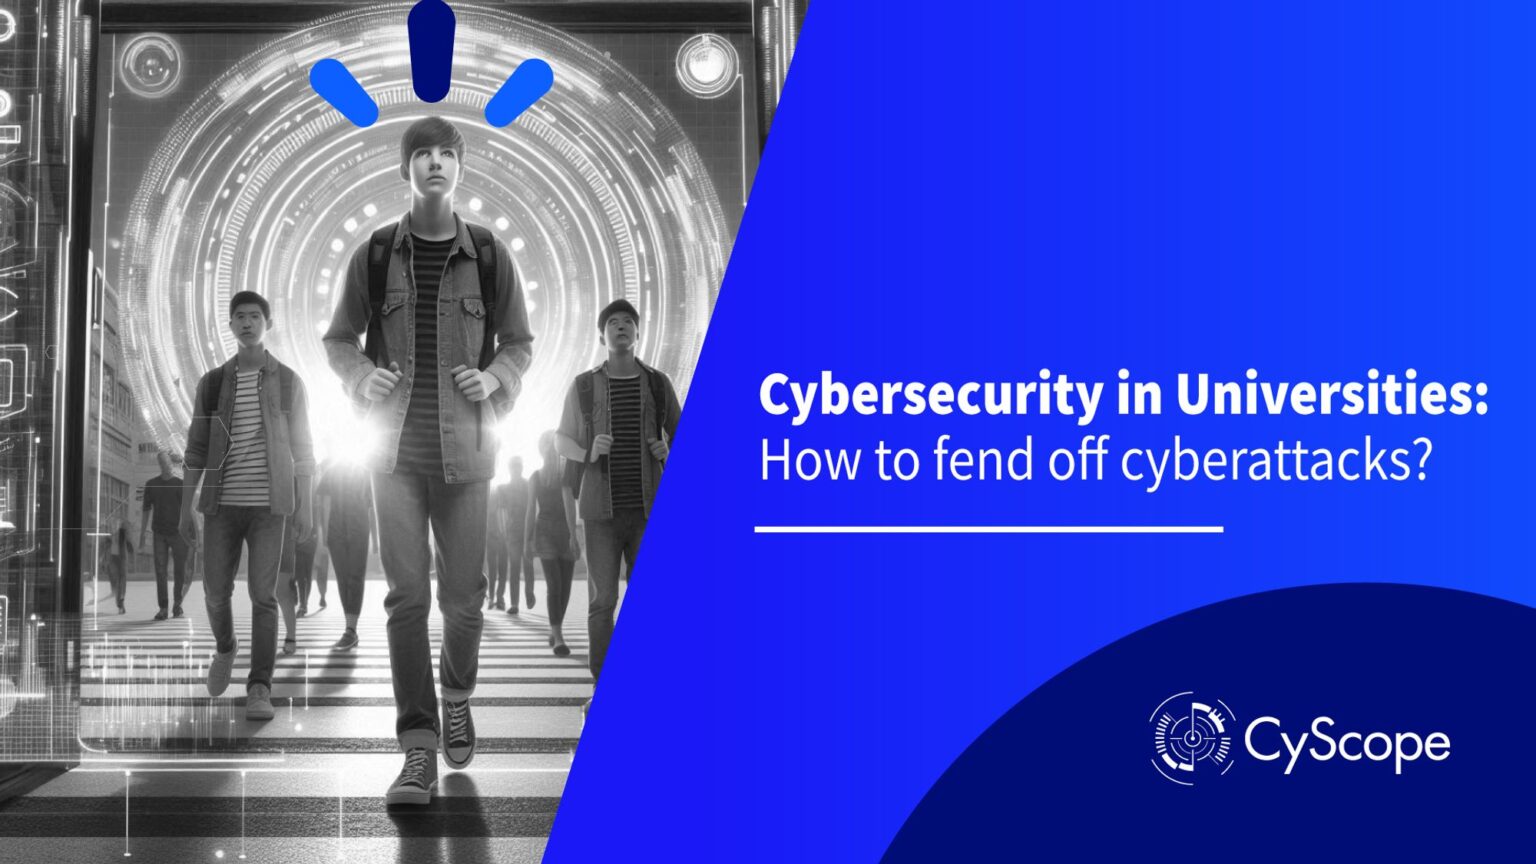 Cybersecurity in universities